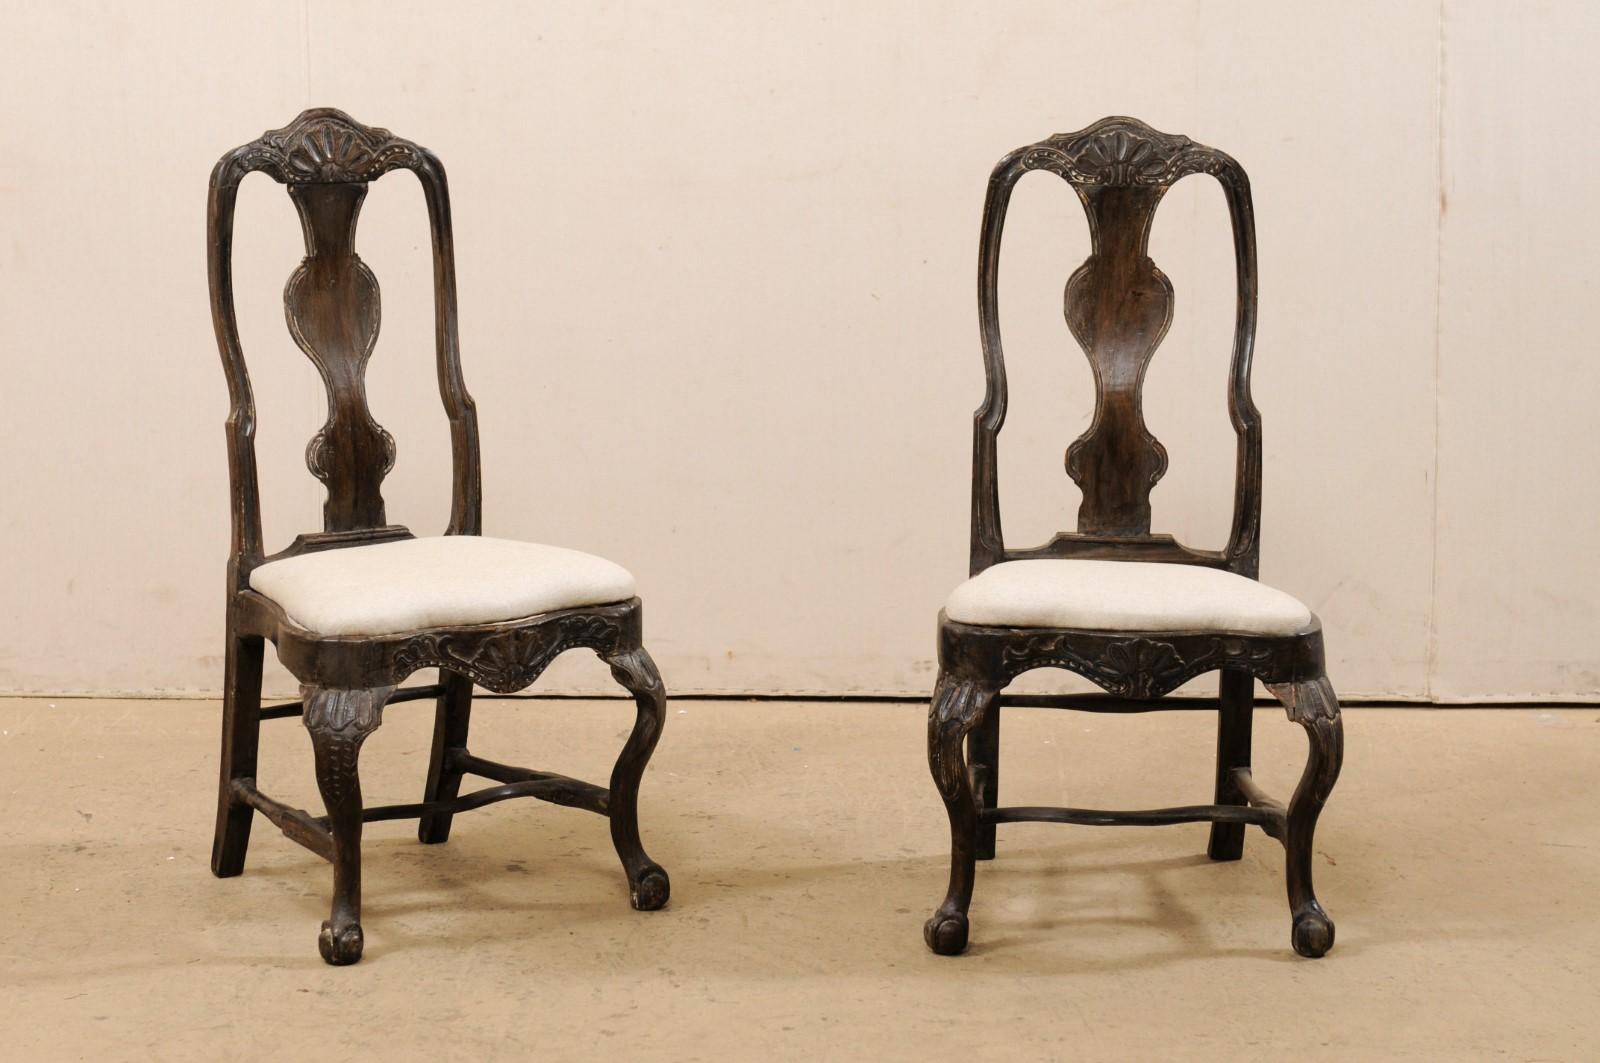 Paire suédoise de chaises latérales d'époque Rococo en bois sculpté du 18e siècle. Cette paire de chaises anciennes d'origine suédoise présente des sculptures en forme de coquille sur la crête de la traverse supérieure et la traverse centrale du